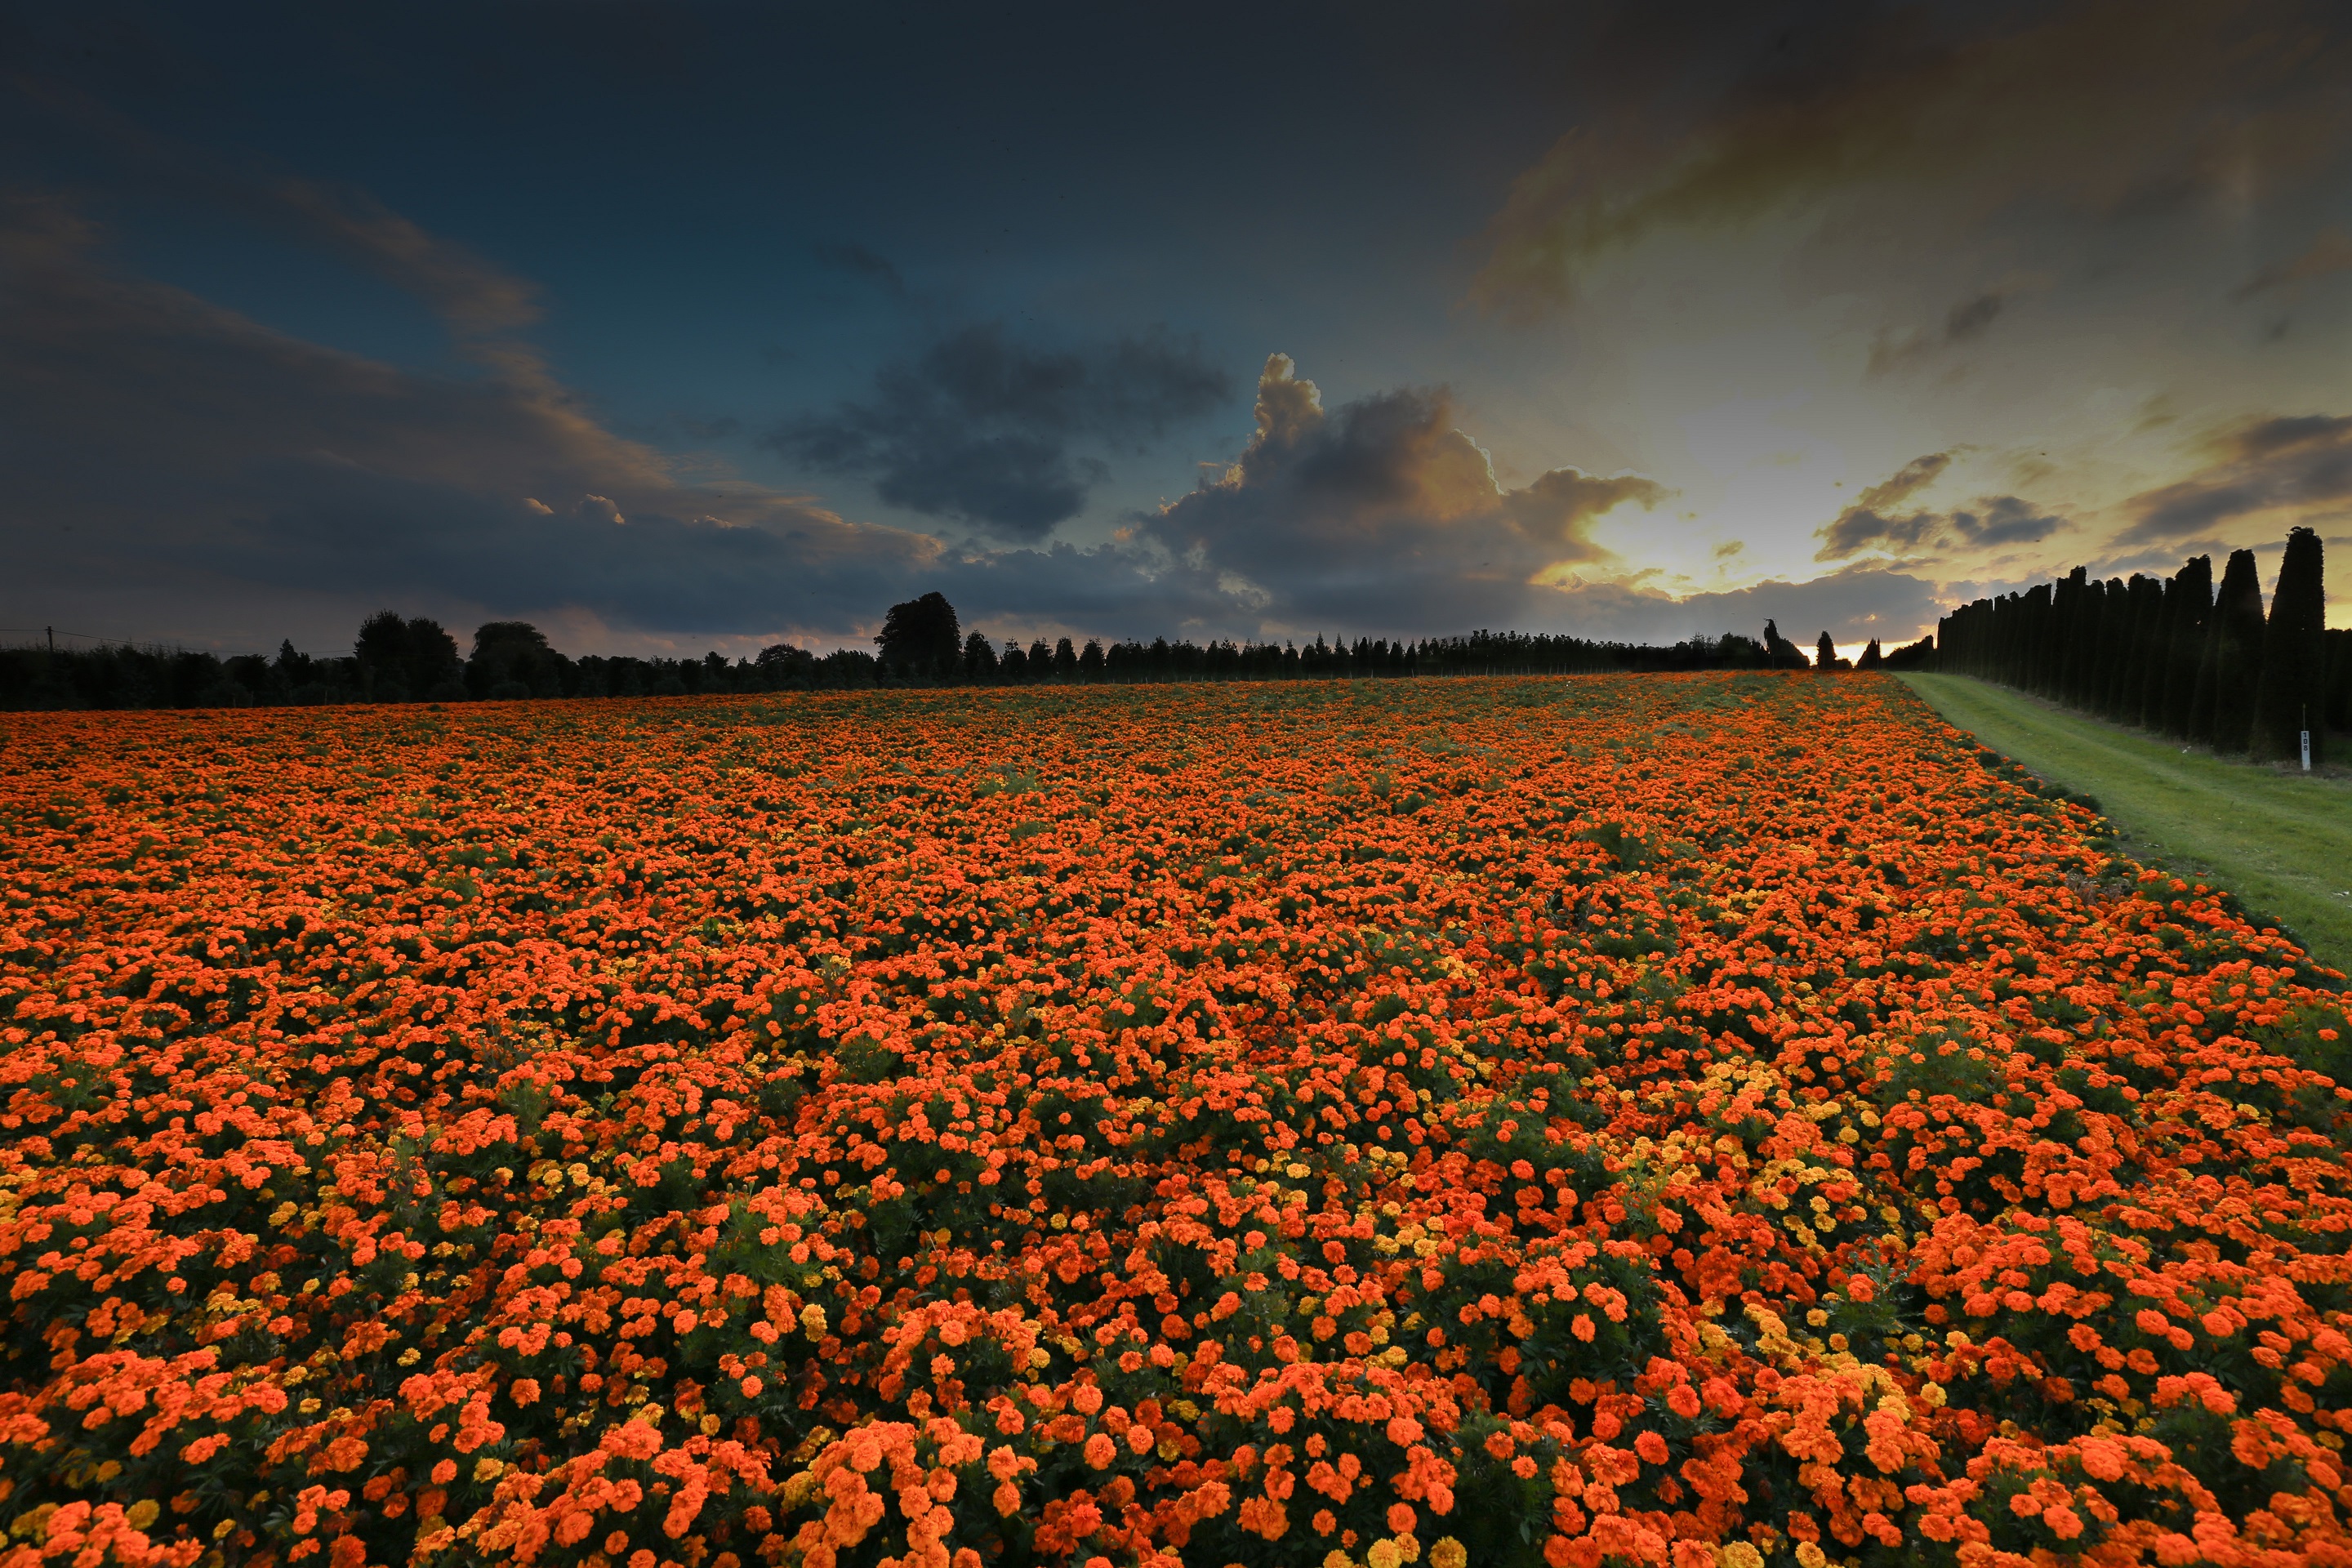 Hd Wallpaper - Farm Crop With Orange Flowers , HD Wallpaper & Backgrounds